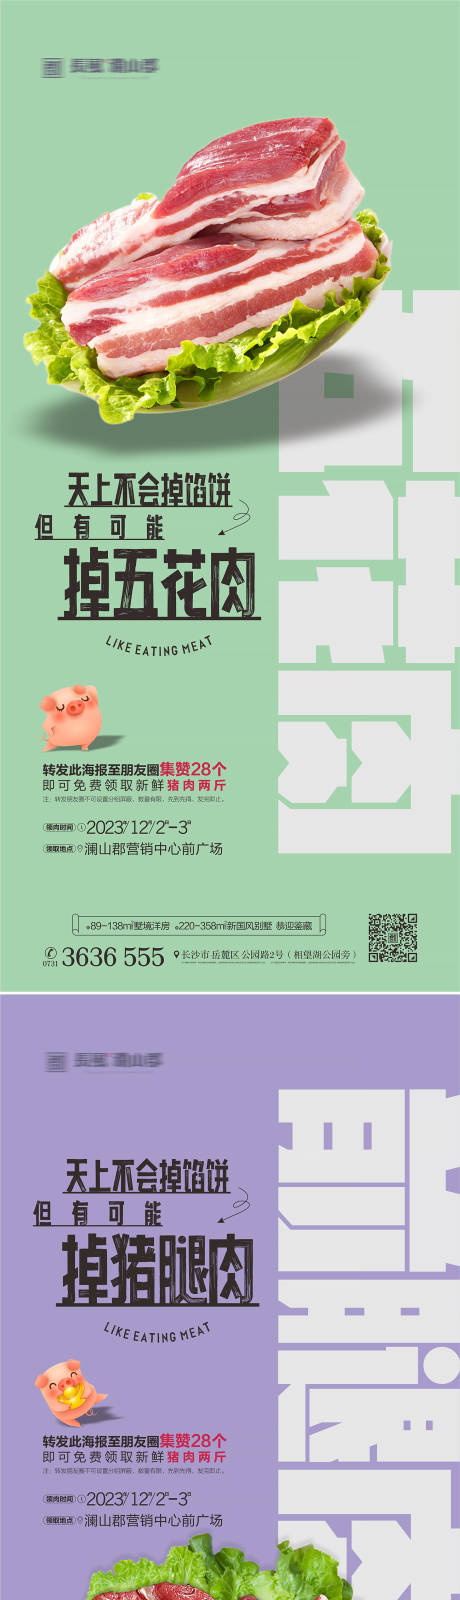 地产送猪肉活动系列海报